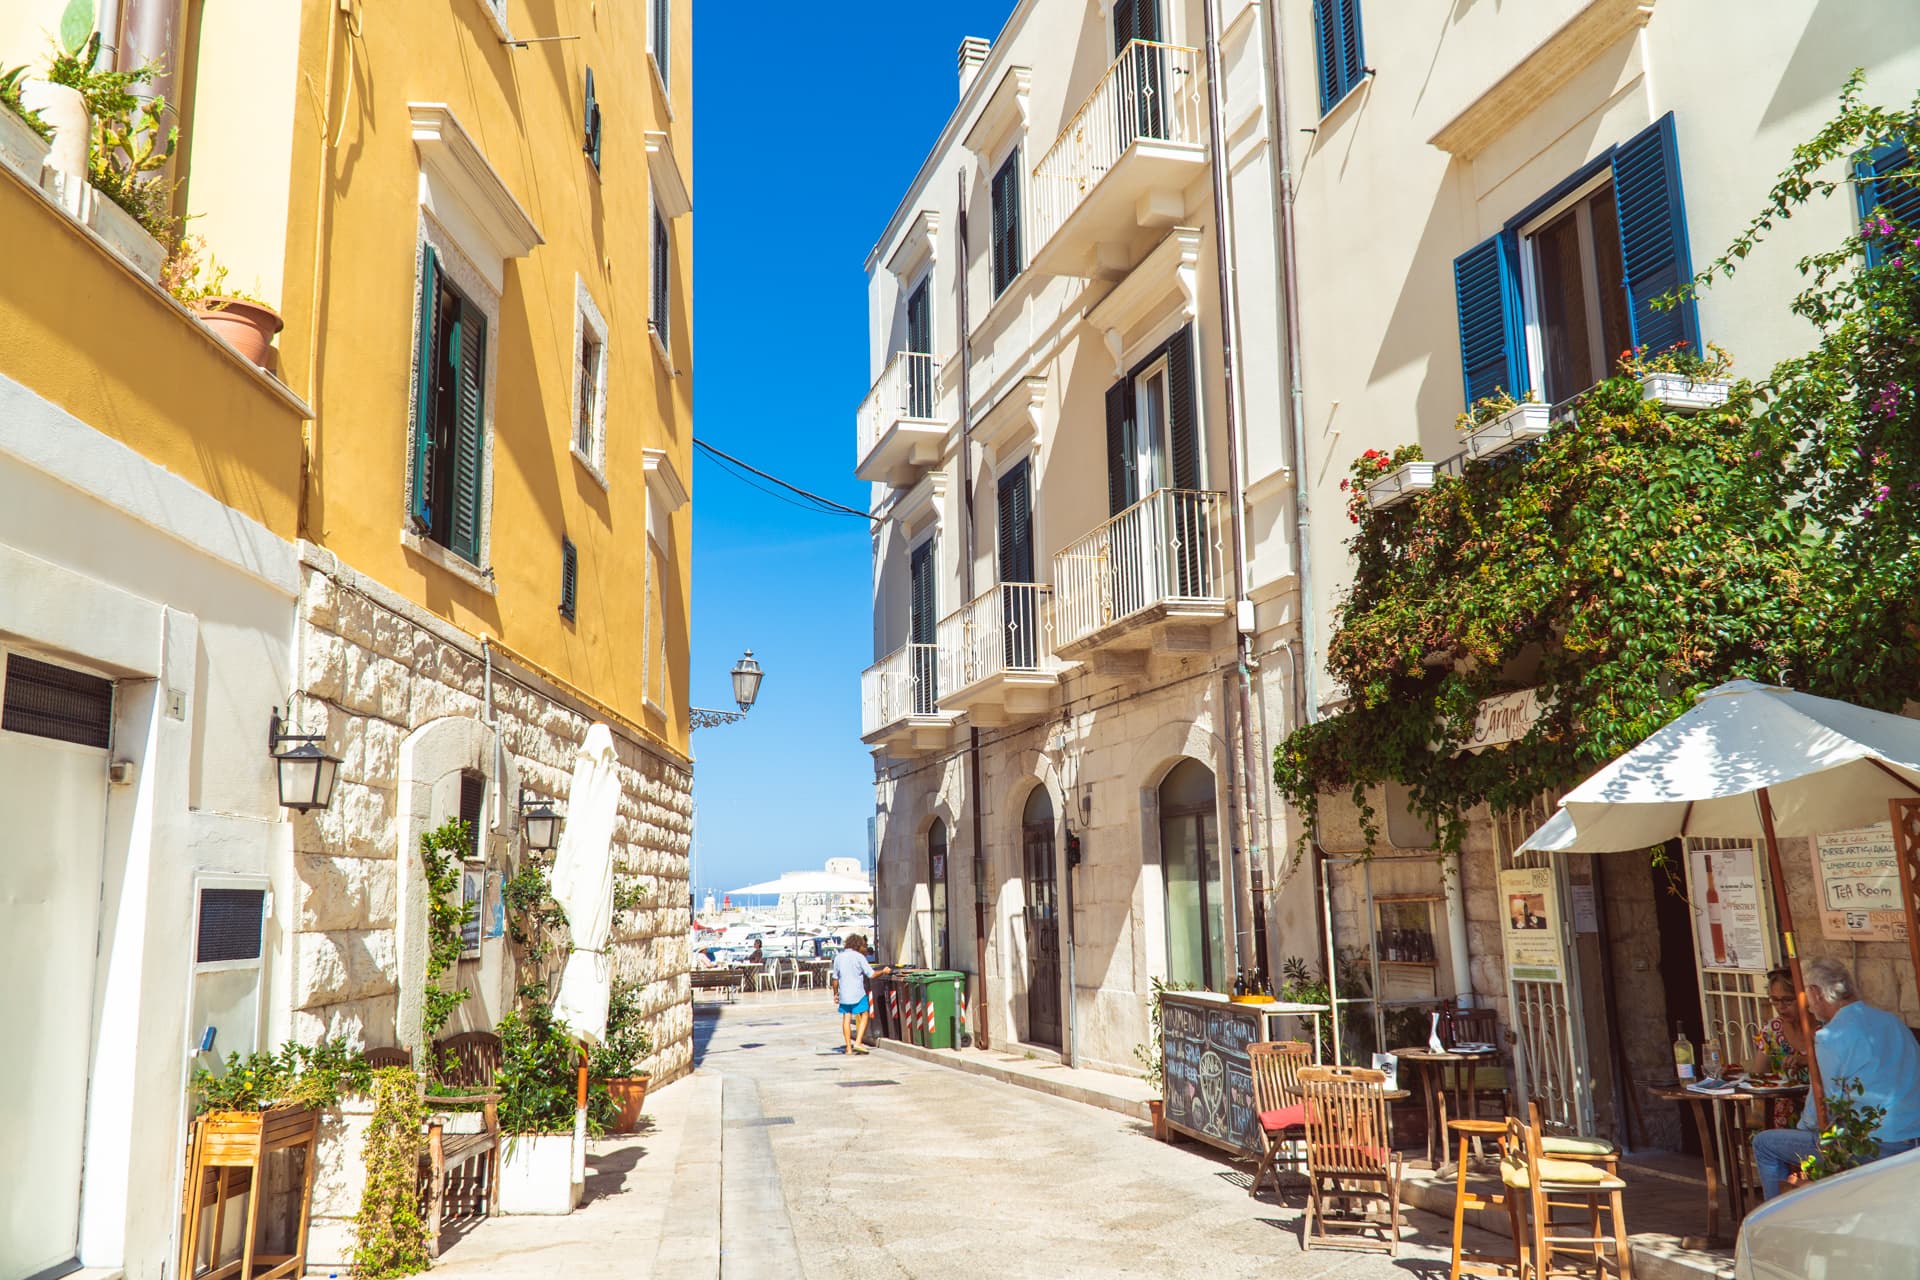 Stare miasto w Trani | Plan wyjazdu do Apulii